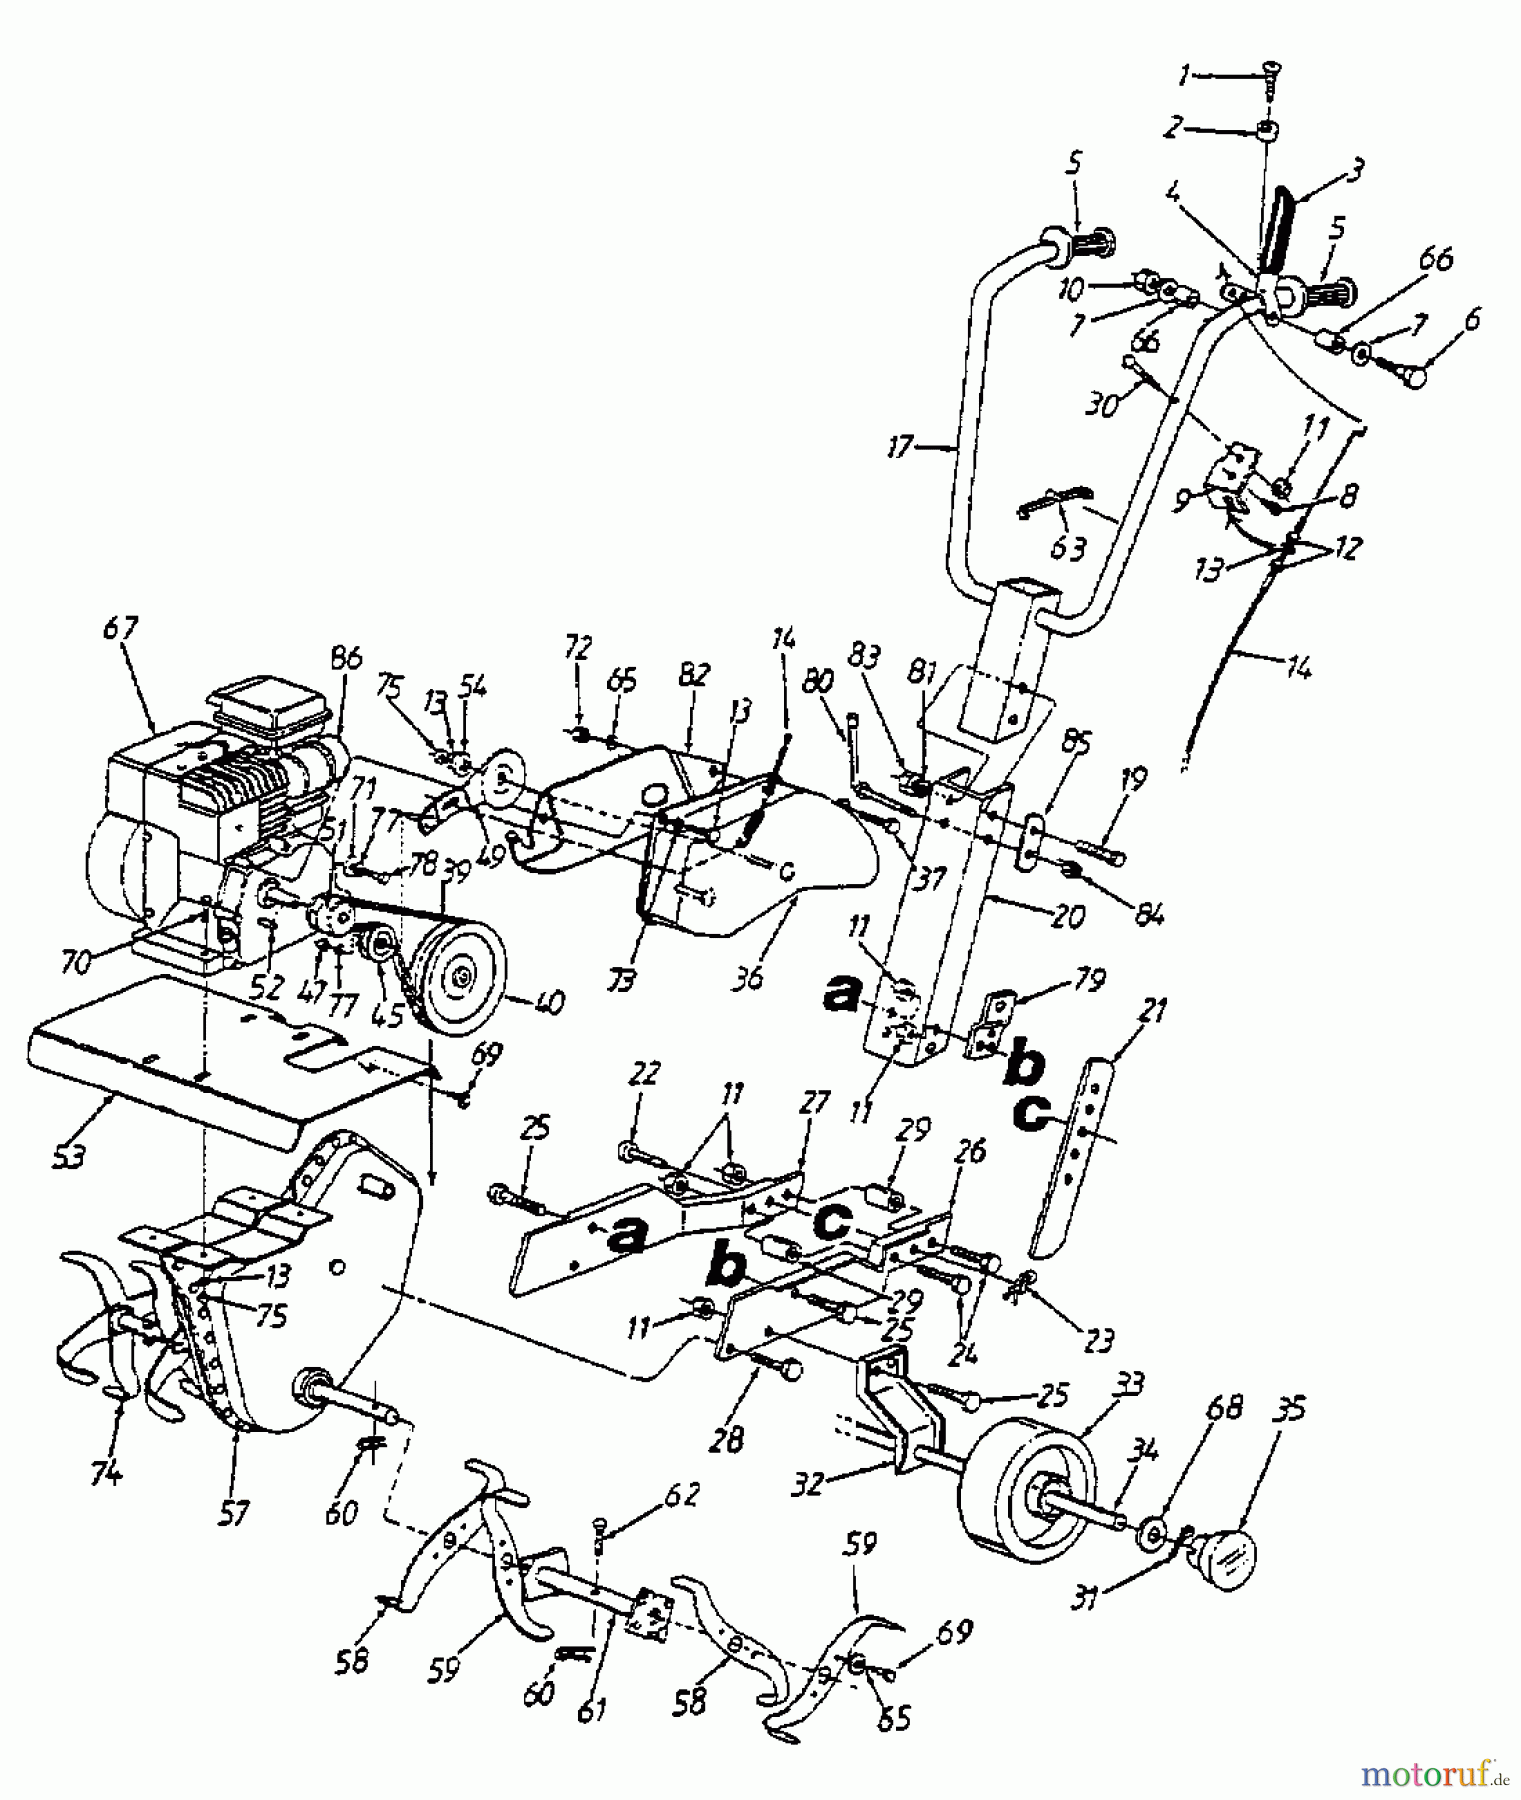  MTD Accèssoires Accèssoires tracteur de jardin et de pelouse Remorque 45-01841  (190-425A000) 190-425-000  (1998) Machine de base